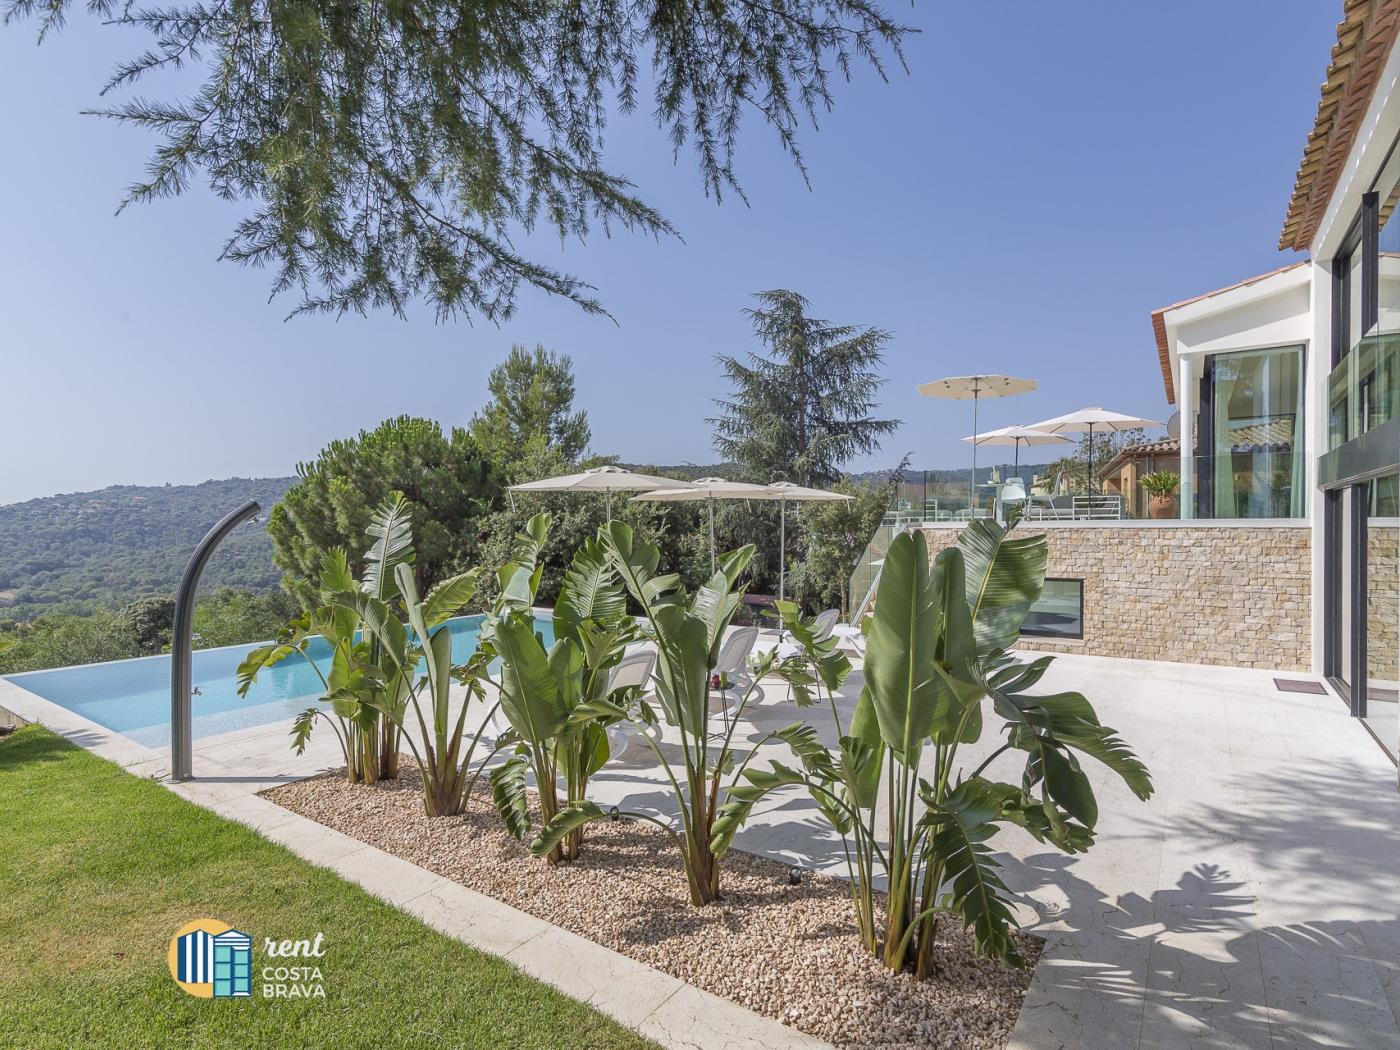 Villa la Dolça avec piscine à débordement, WIFI gratuit, climatisation. à Calonge